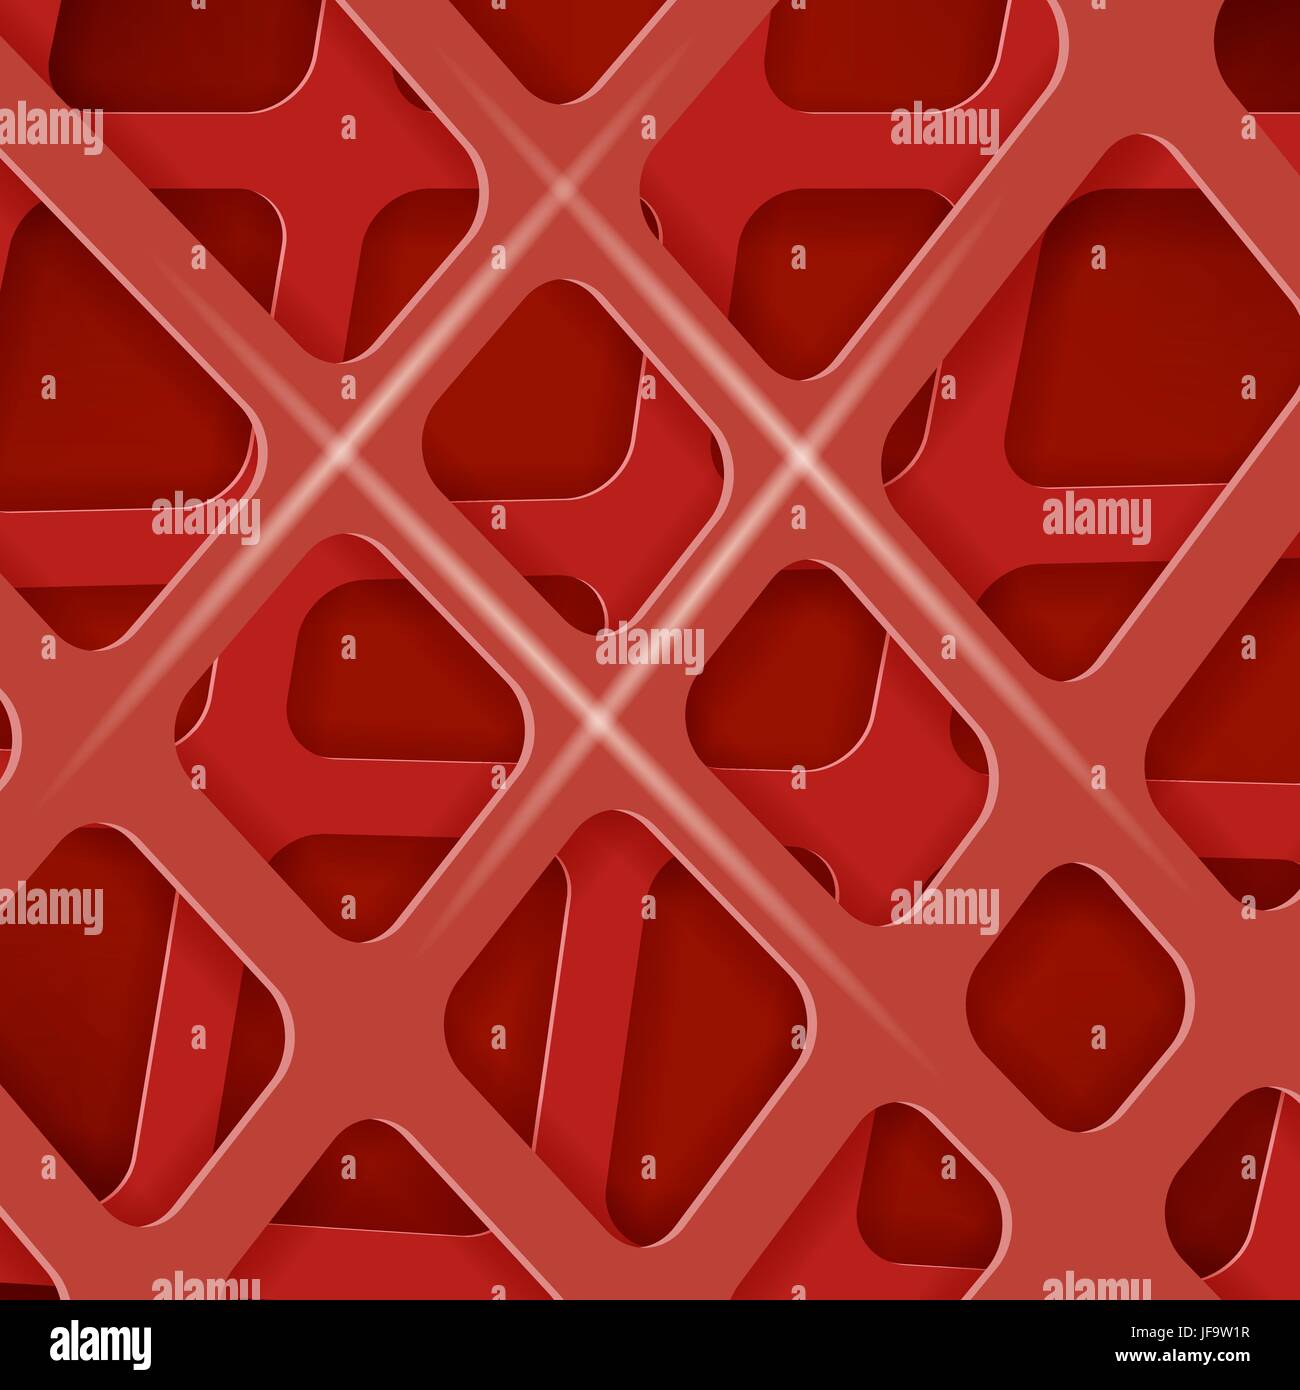 Gekreuzte Linien abstrakt rote Abdeckung Hintergrund. Roten Muster Stock Vektor